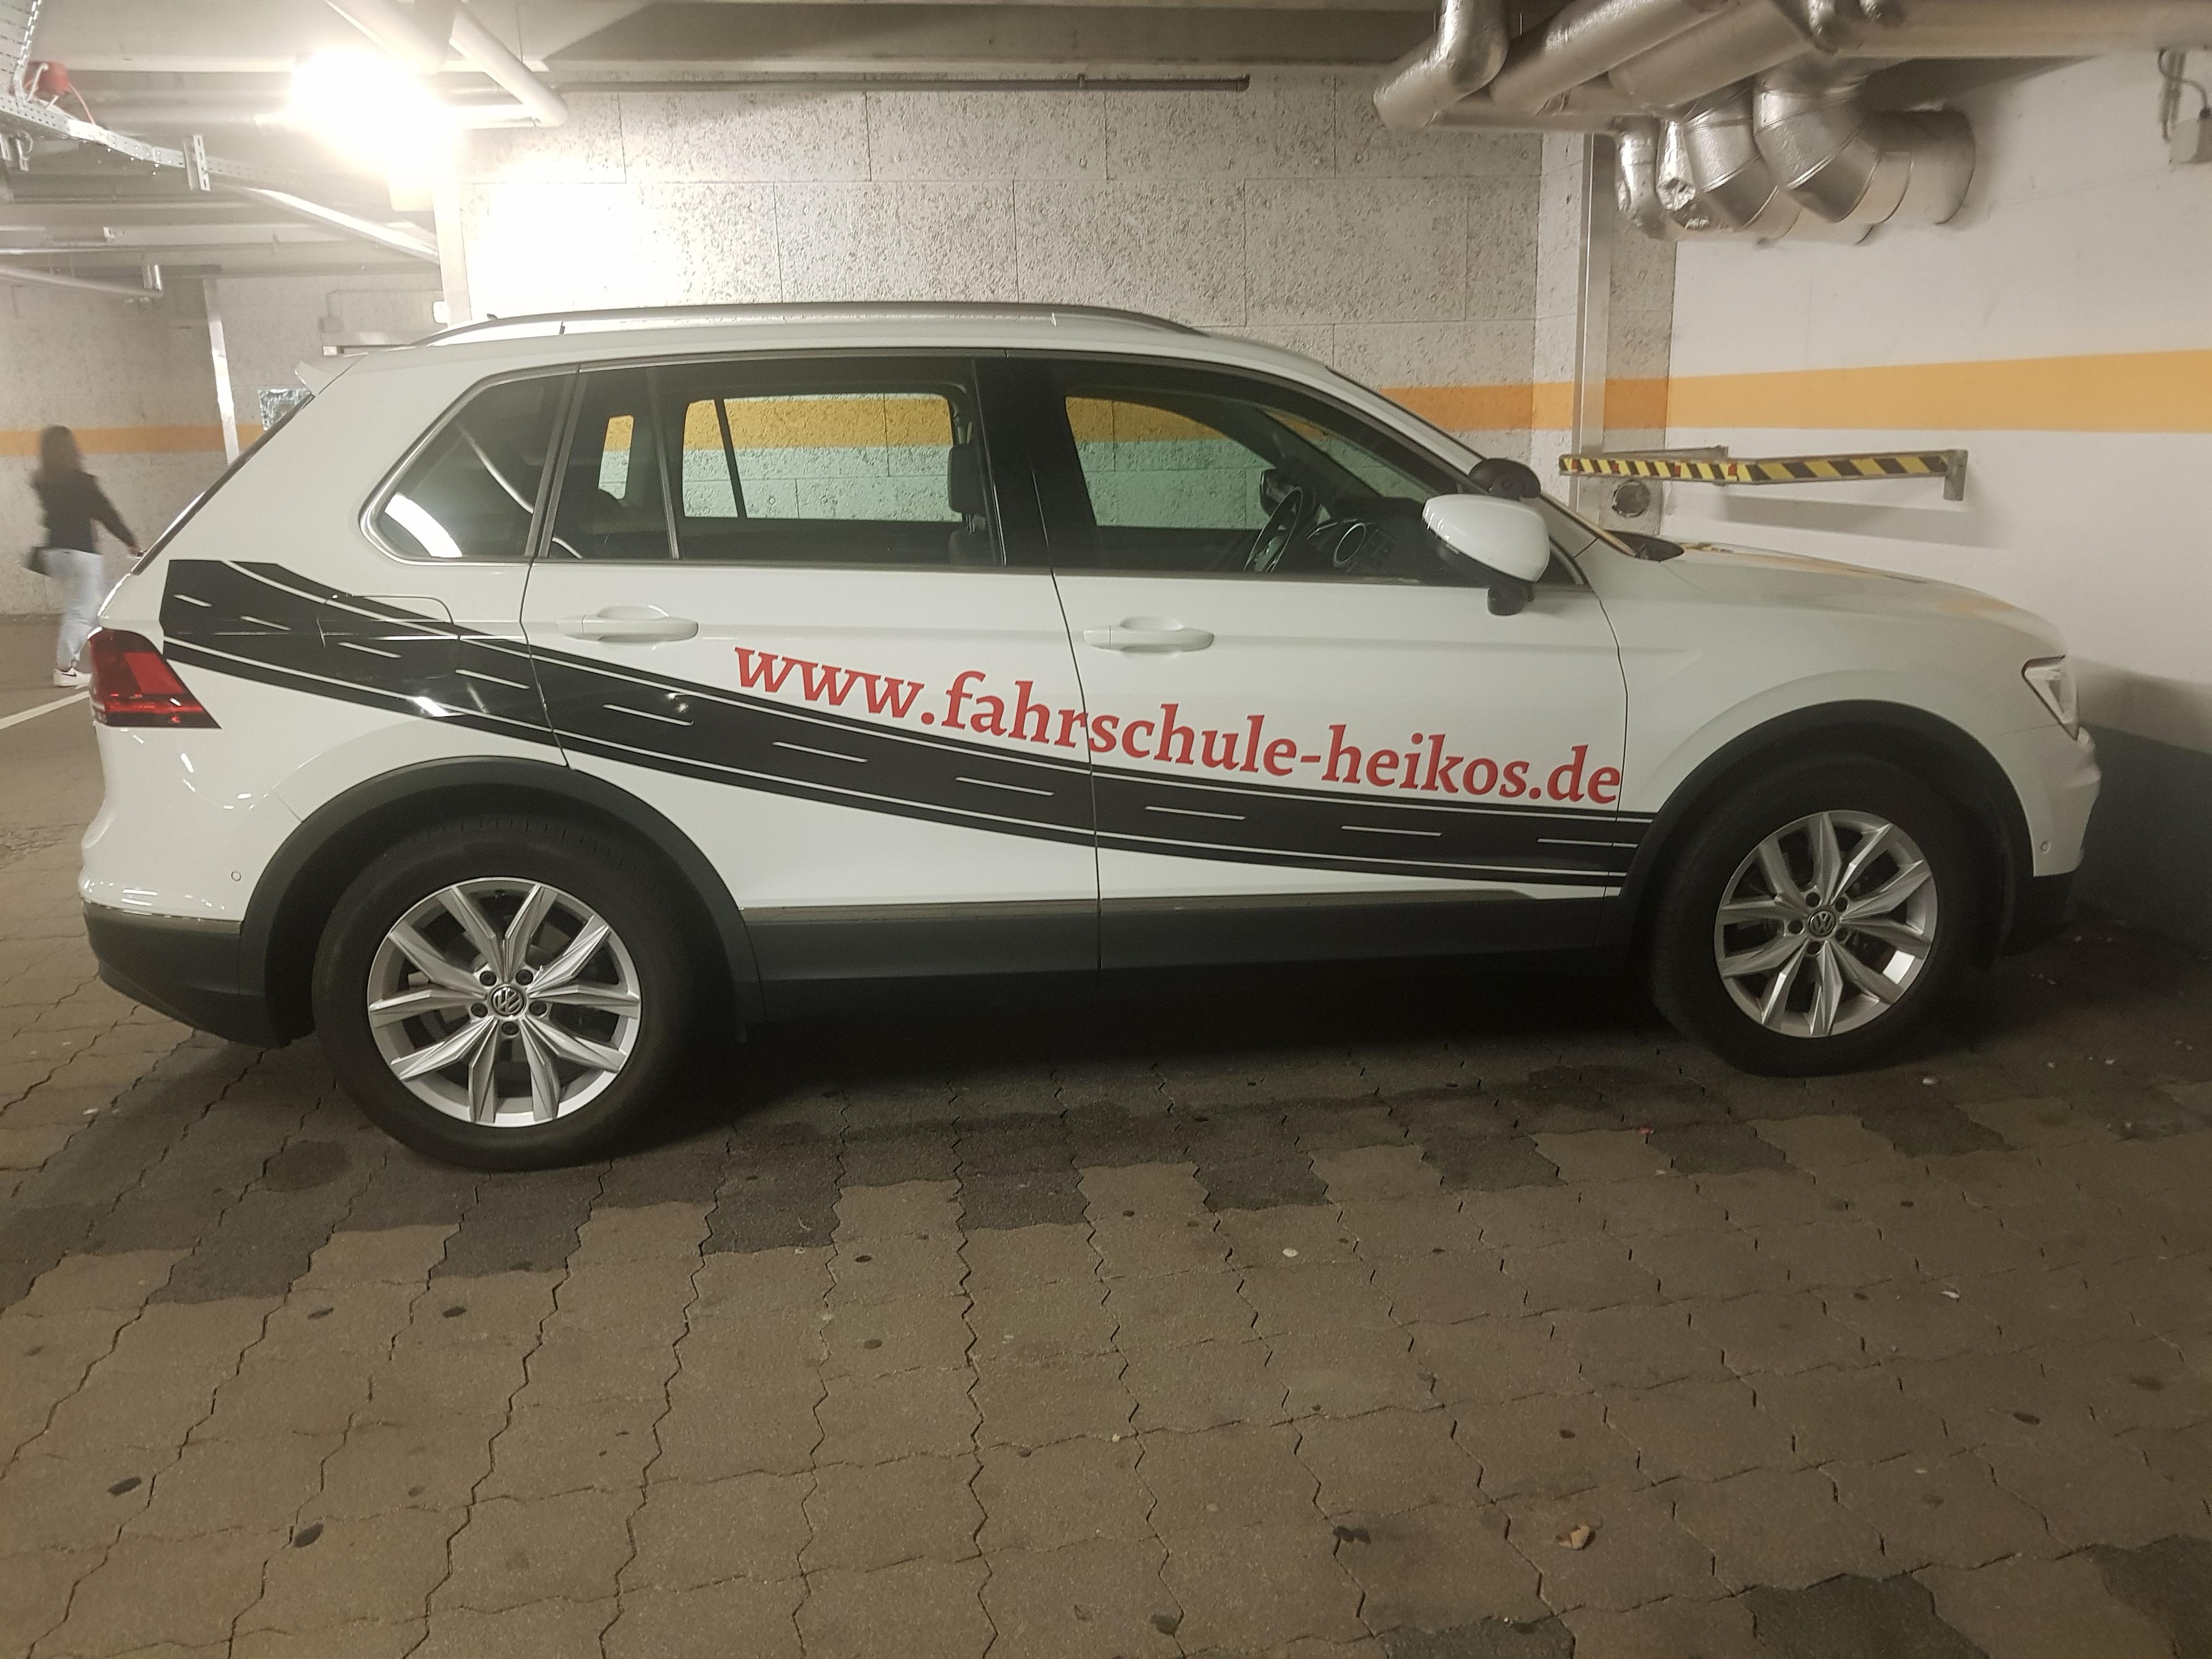 Bilder Heiko's Fahrschule | Fahrtraining Führerschein Auto | Perlach München